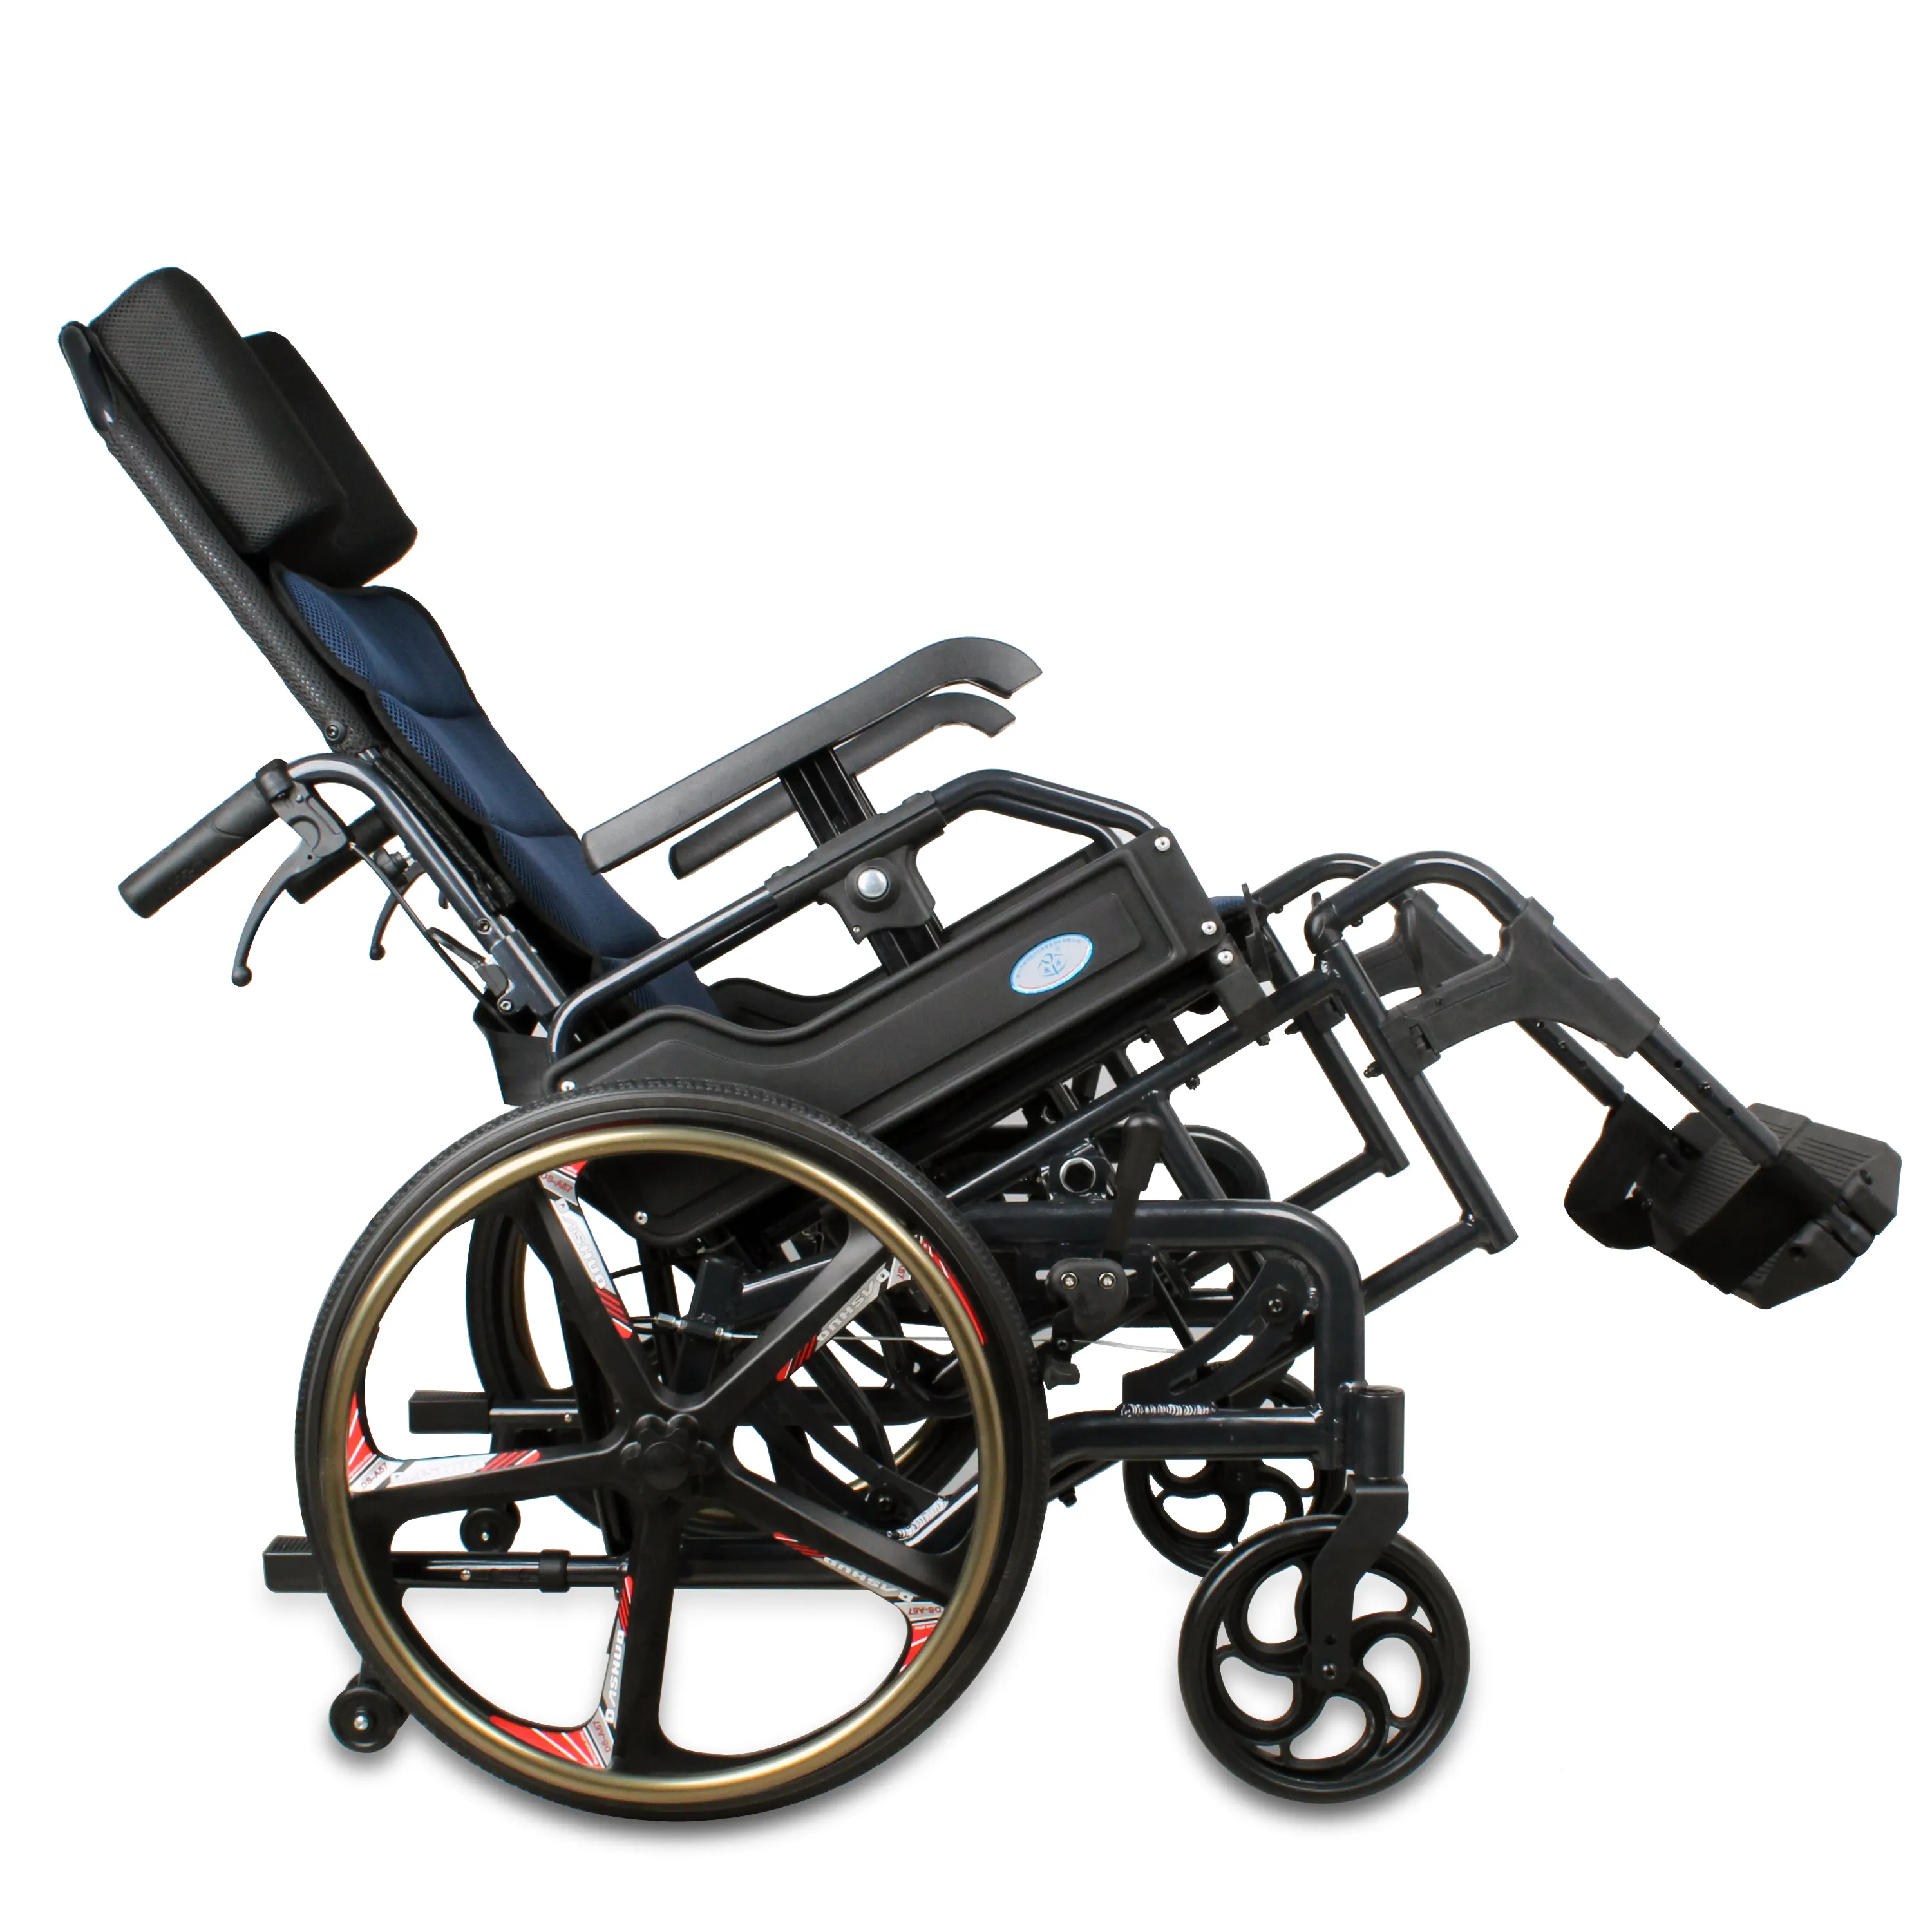 높은 등받이 파란색 알루미늄 휠체어 접이식 경량, 팔걸이와 분리형 레그